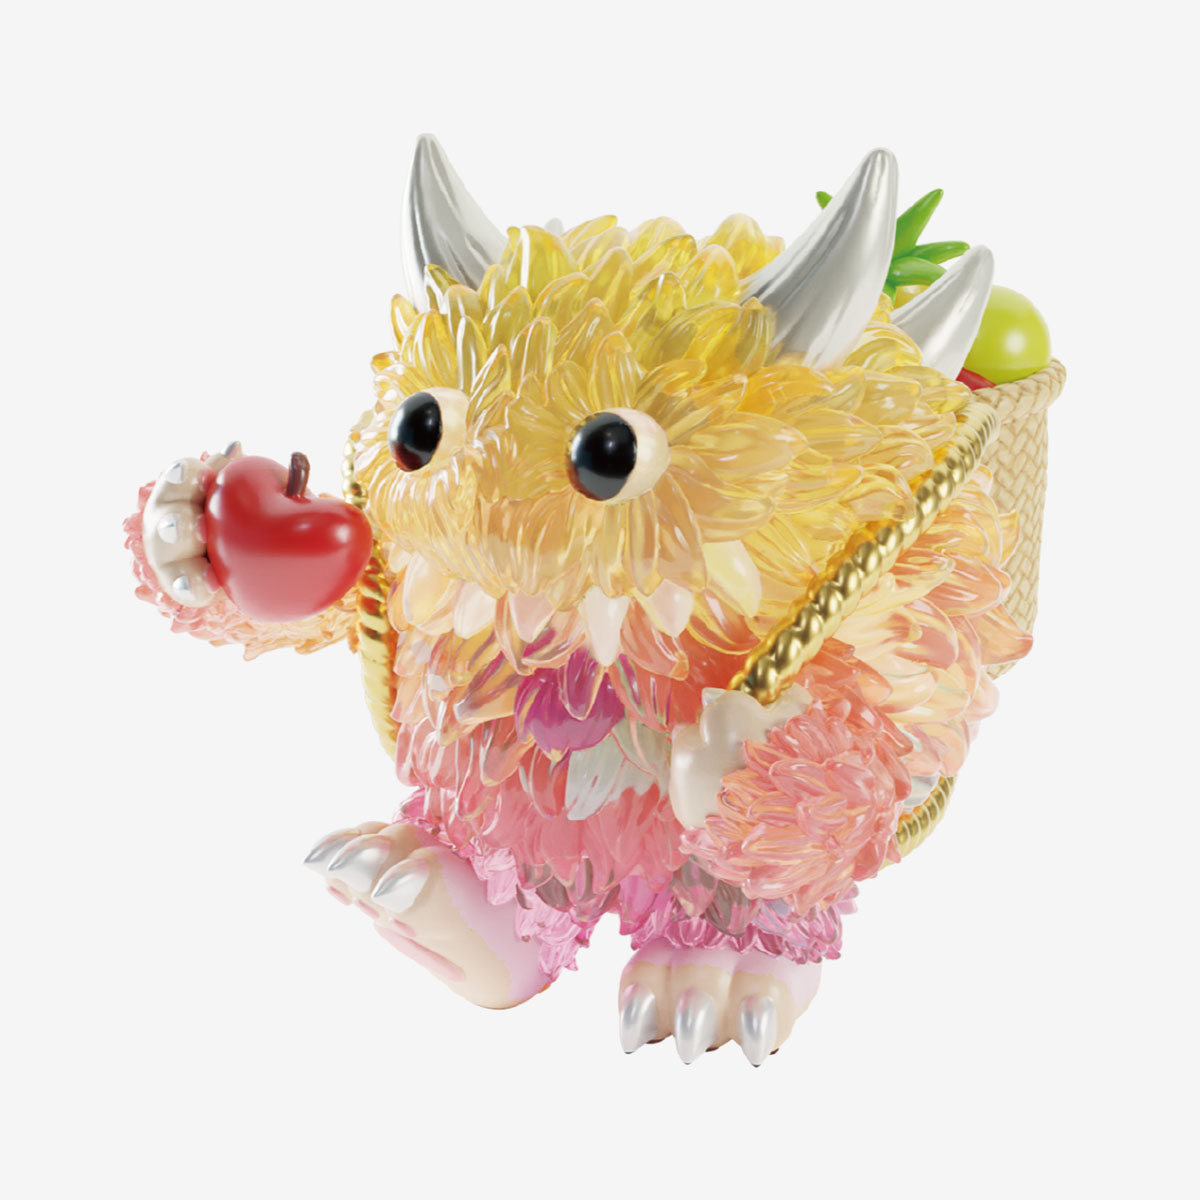 INSTINCTOY Monster Fluffy Joyful Life Series | Blind Boxes - POP 